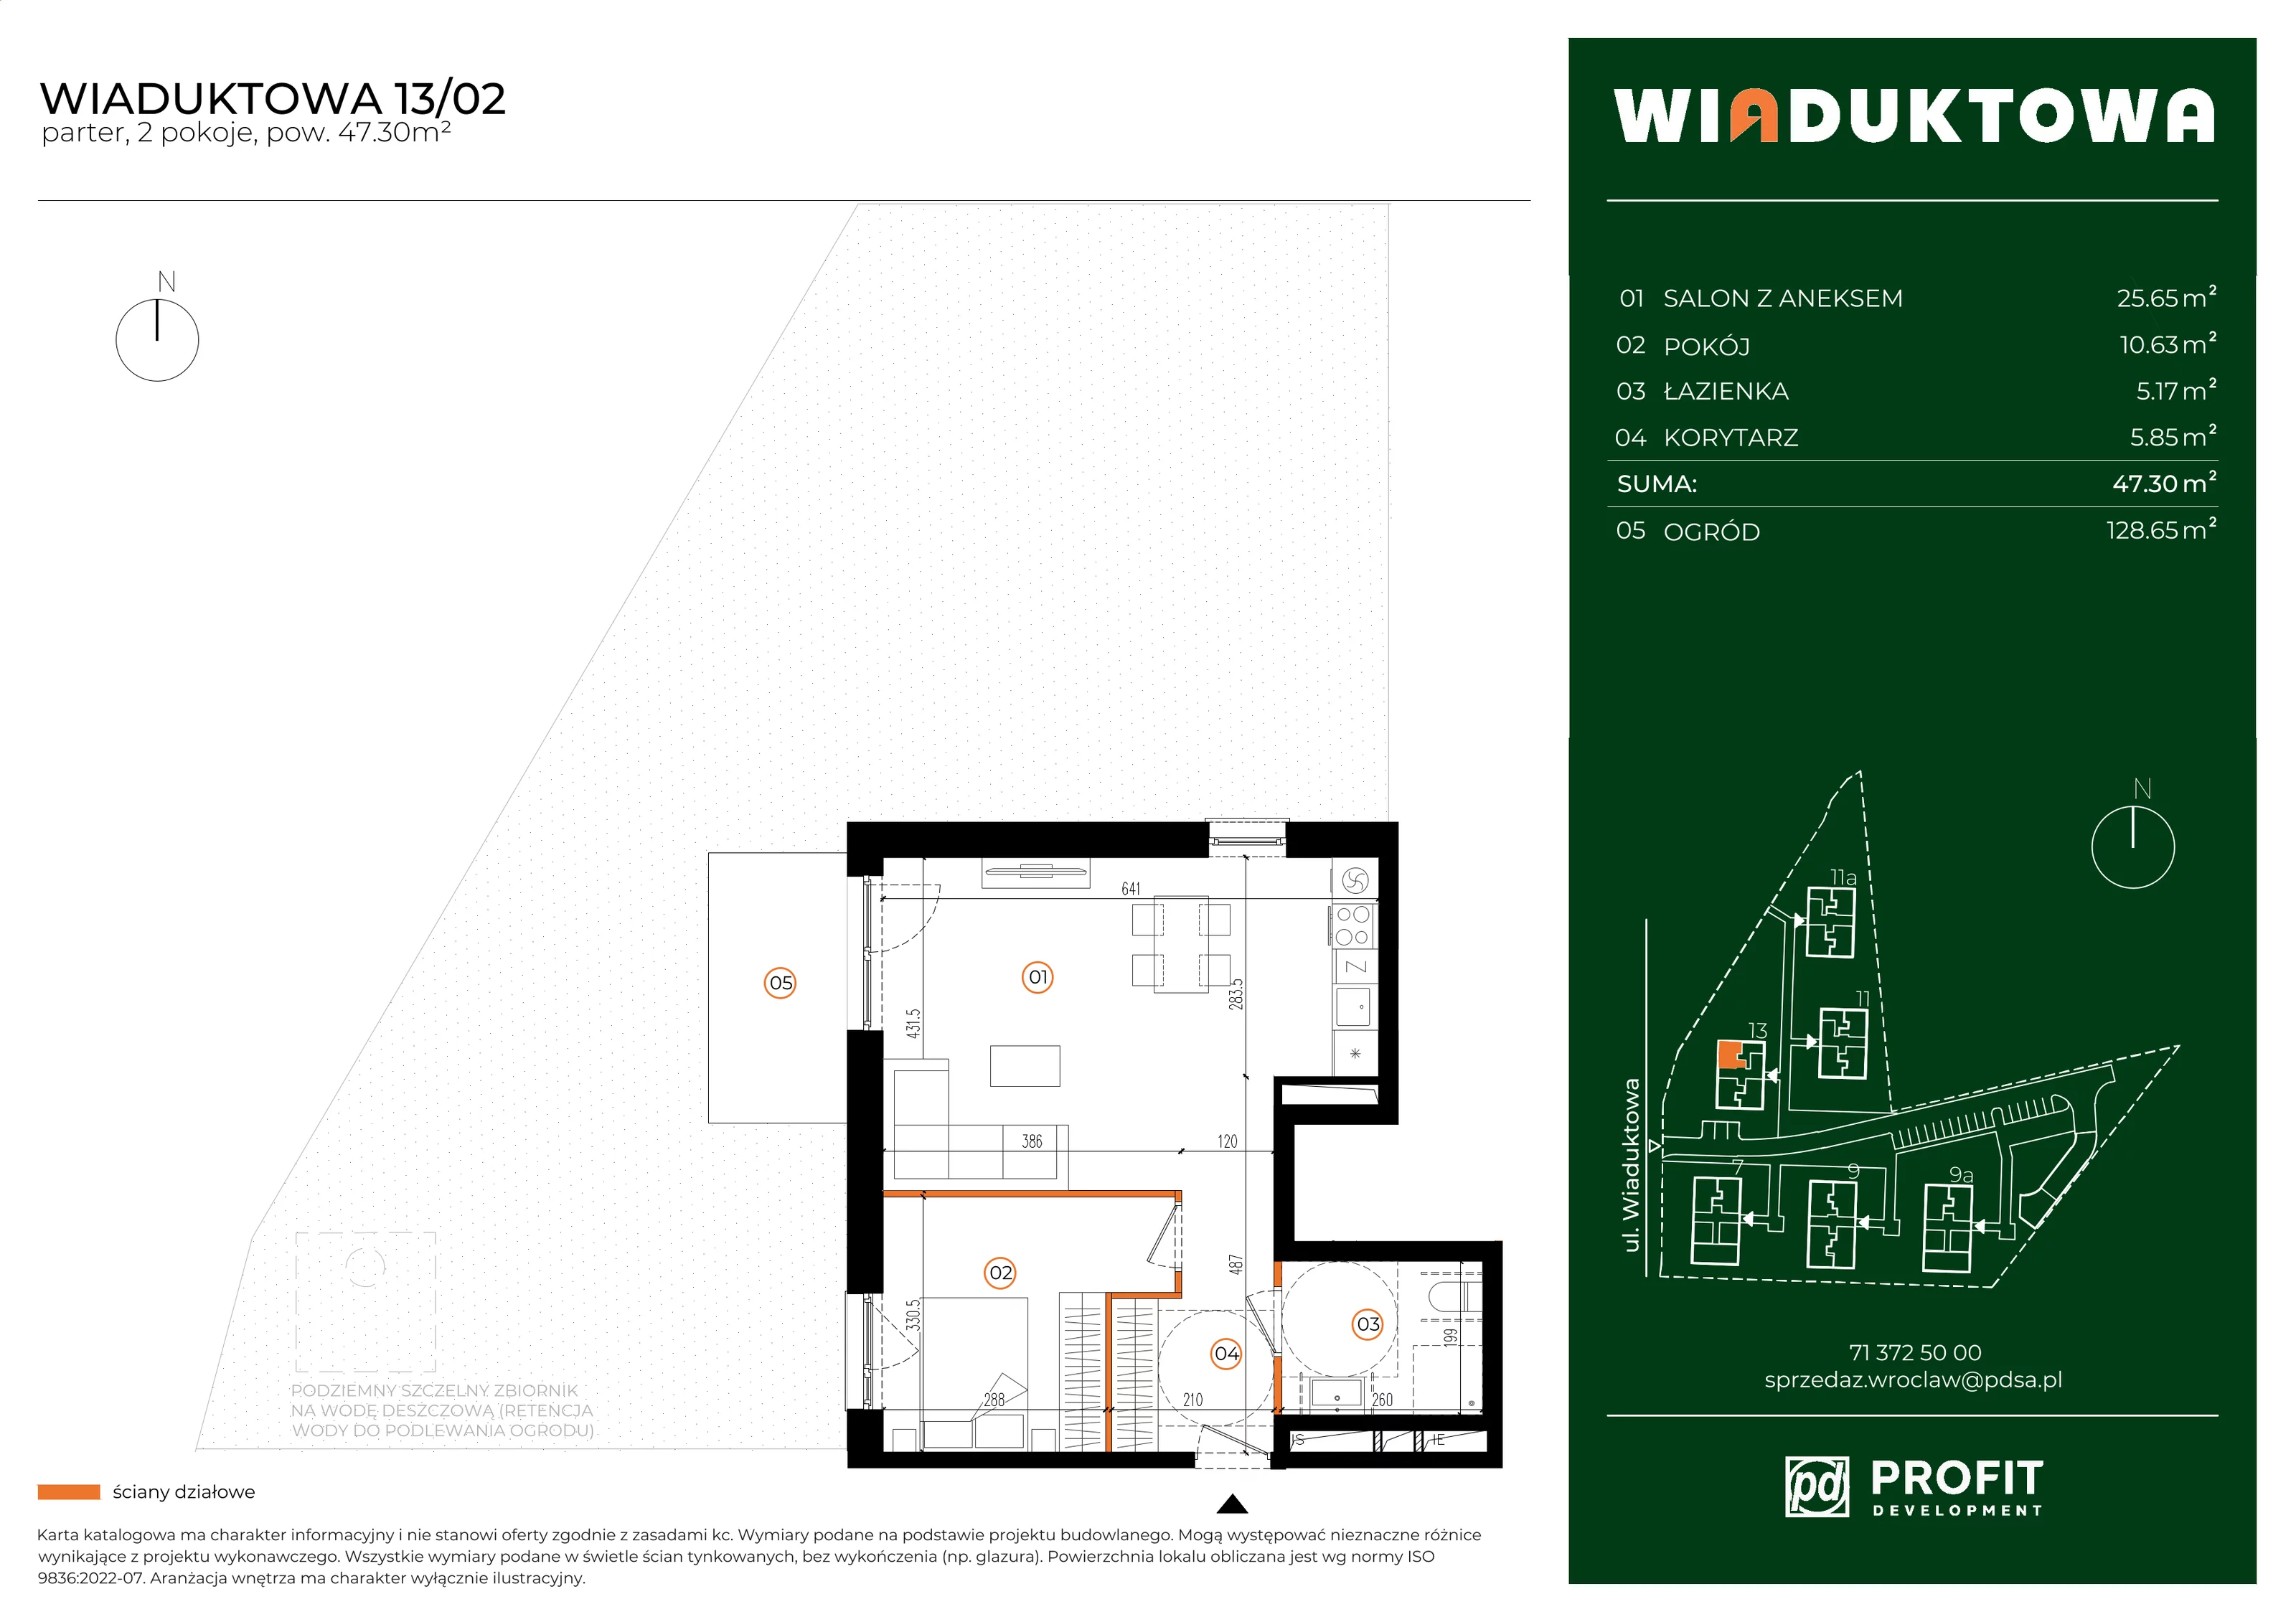 Mieszkanie 47,30 m², parter, oferta nr WI/13/02, Wiaduktowa, Wrocław, Krzyki-Partynice, Krzyki, ul. Wiaduktowa